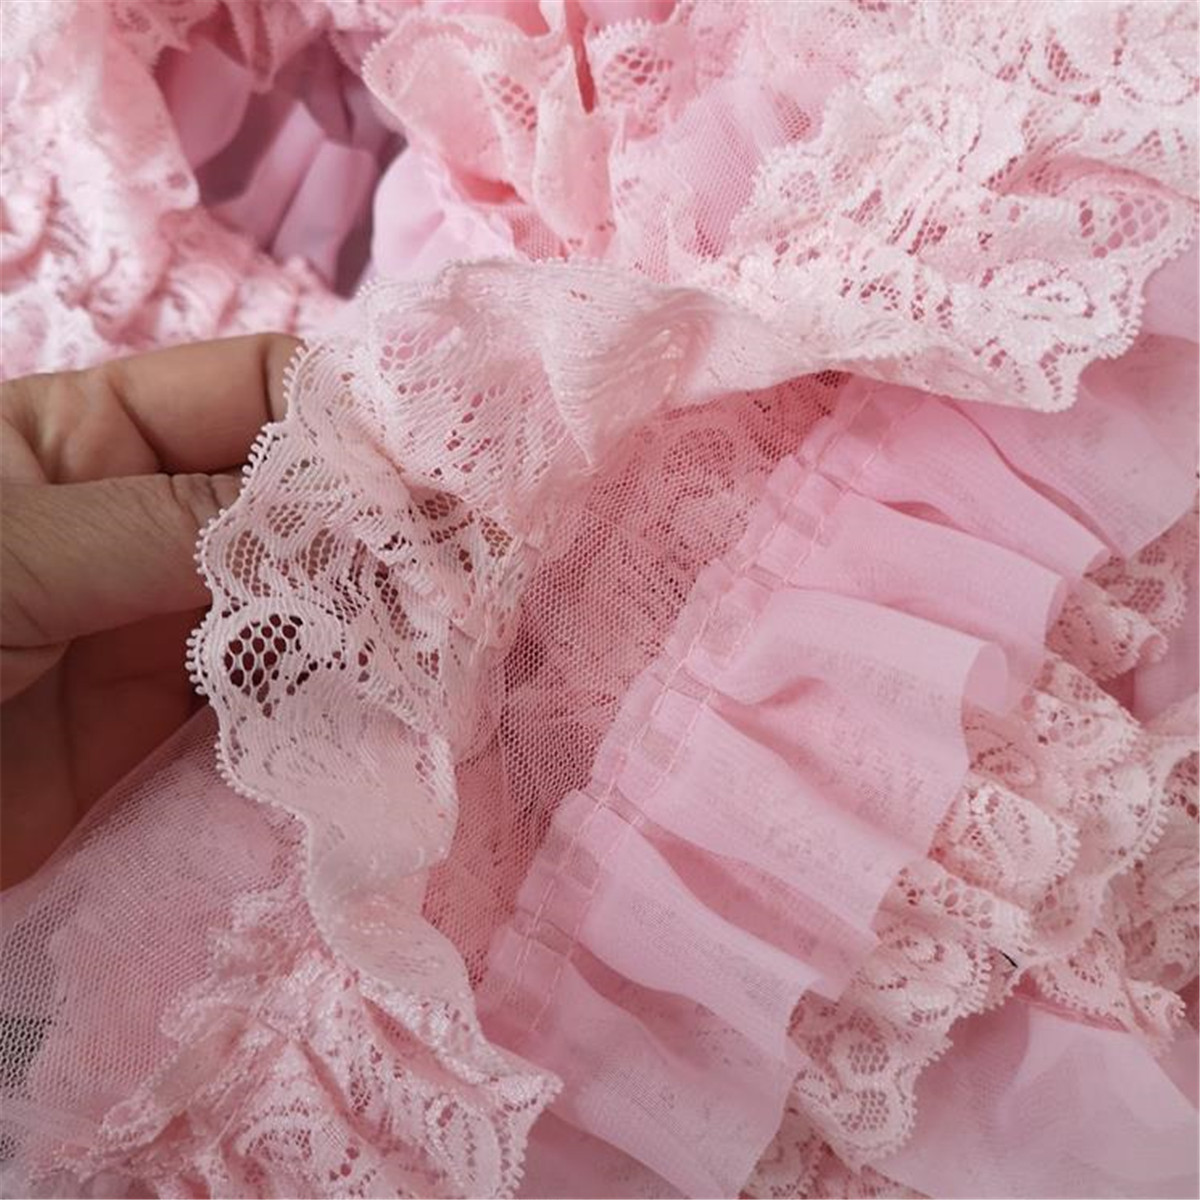 50cm Pink Chiffon Ruffle Lace Trim 3 Layer Pleated Ribbon Sewing 394 Width 885085902773 Ebay 1446